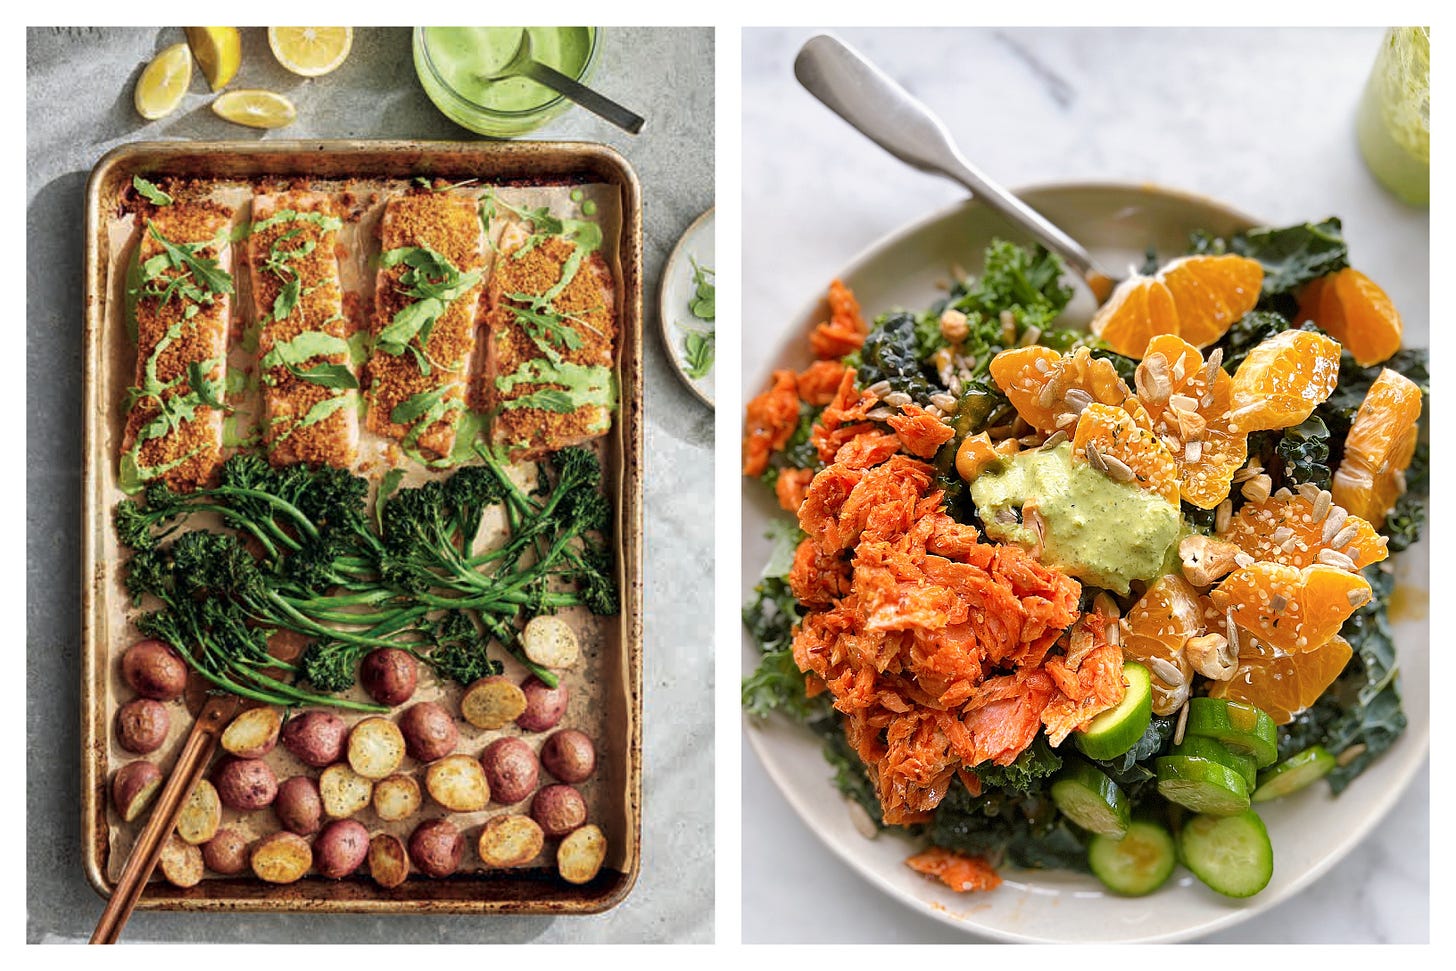 Image 1: crispy salmon with green goddess and broccolini, image 2: chili salmon salad